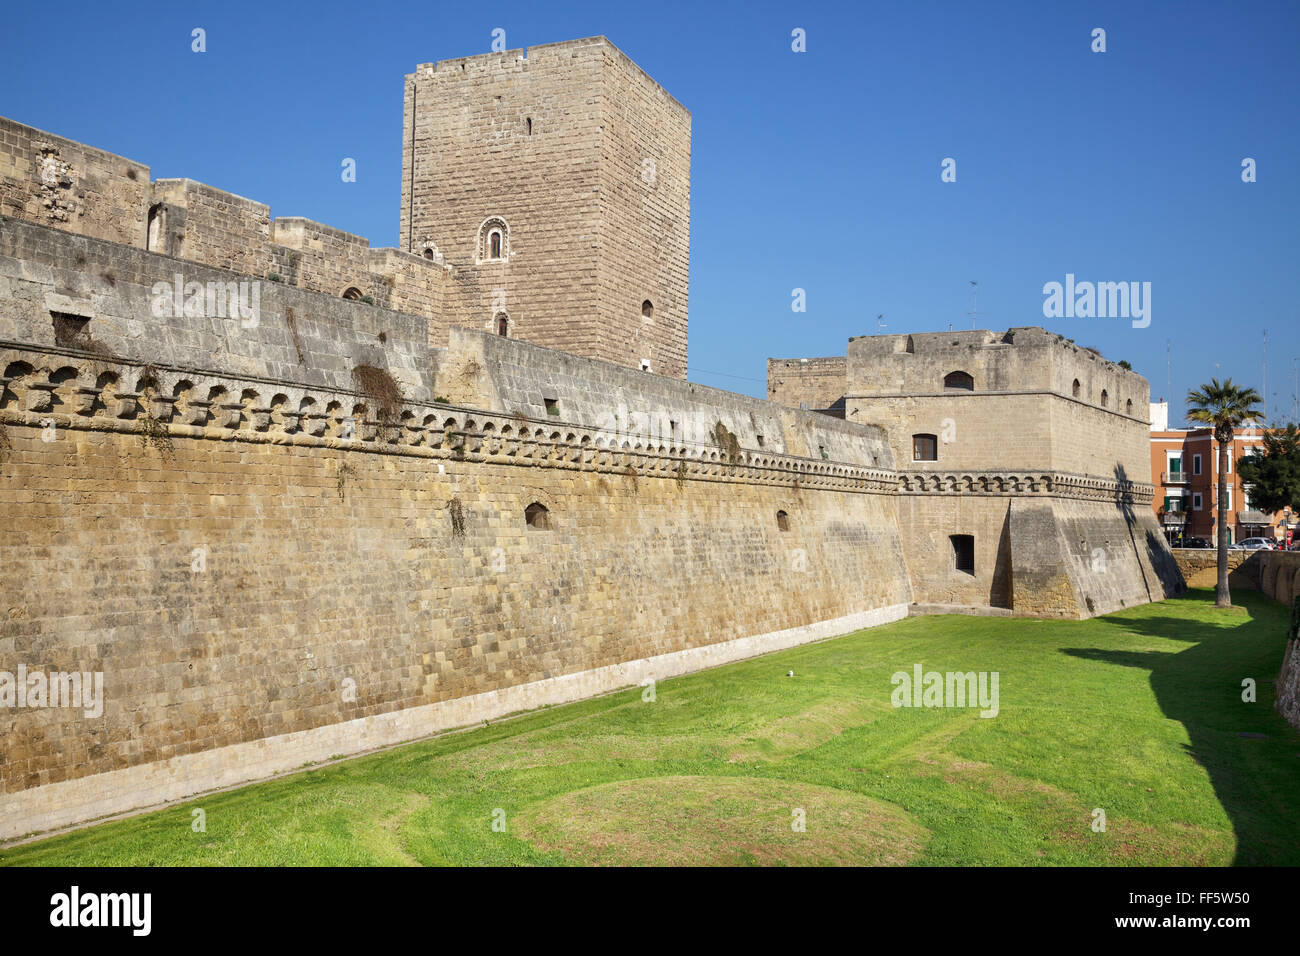 Castello Normanno - Svevo, Bari, Puglia, Italy Stock Photo